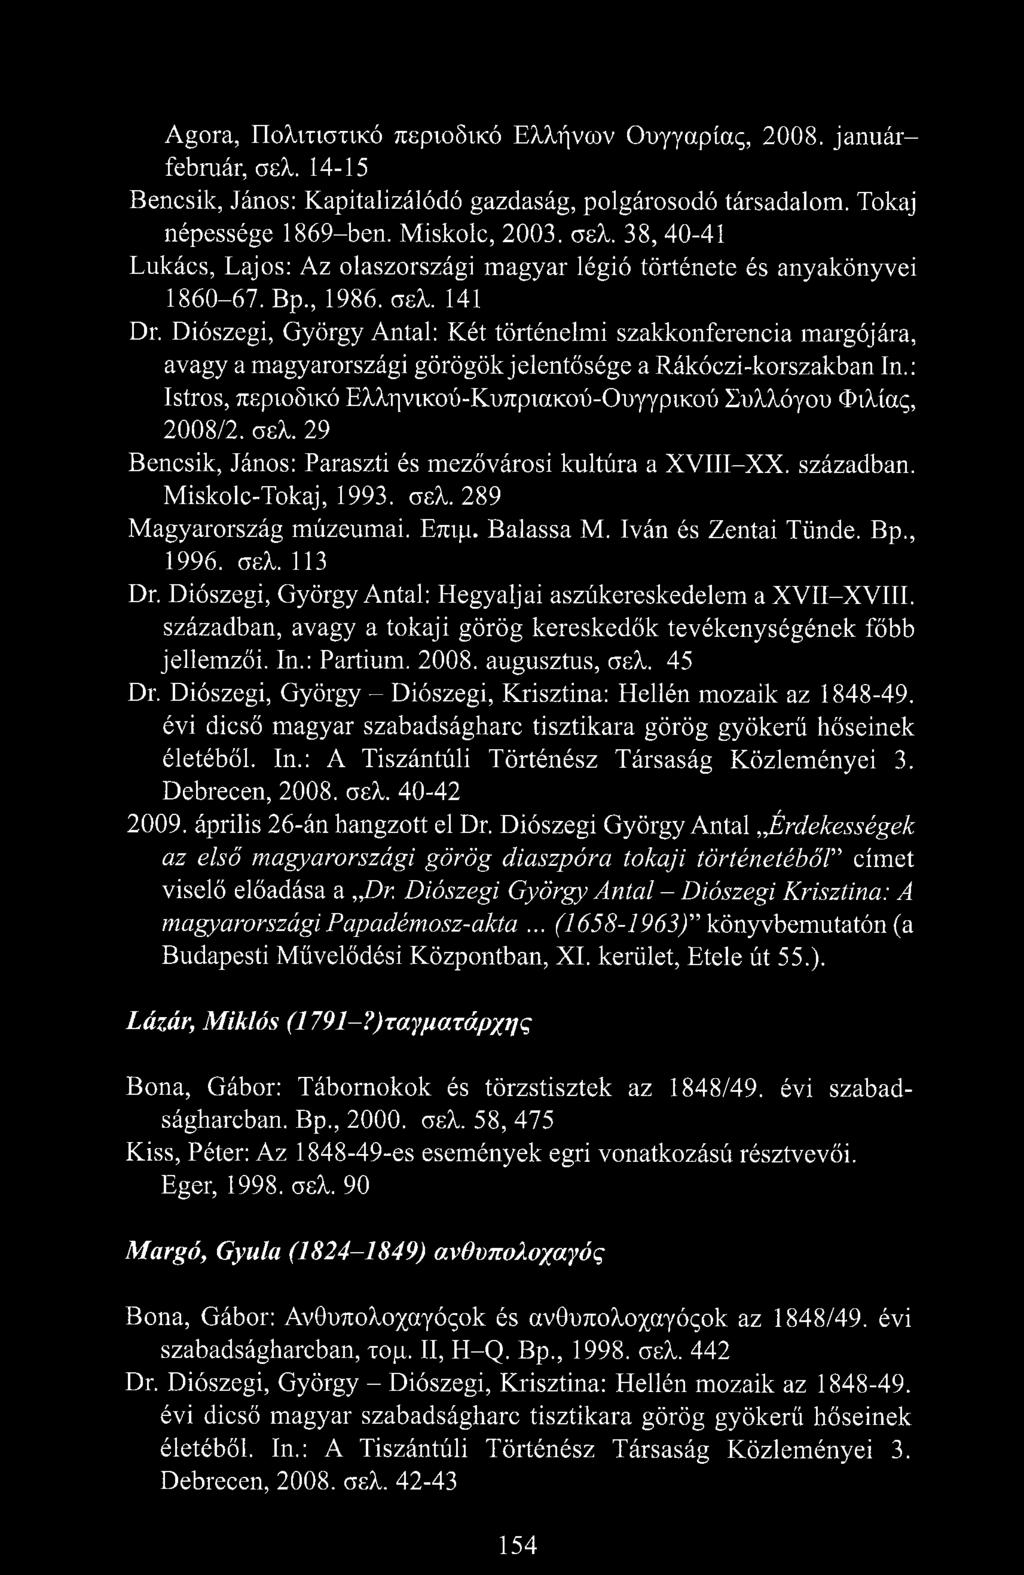 : Istros, περιοδικό Ελληνικού-Κυπριακού-Ουγγρικού Συλλόγου Φιλίας, 2008/2. σελ. 29 Bencsik, János: Paraszti és mezővárosi kultúra a XVIII-XX. században. Miskolc-Tokaj, 1993. σελ. 289 Magyarország múzeumai.